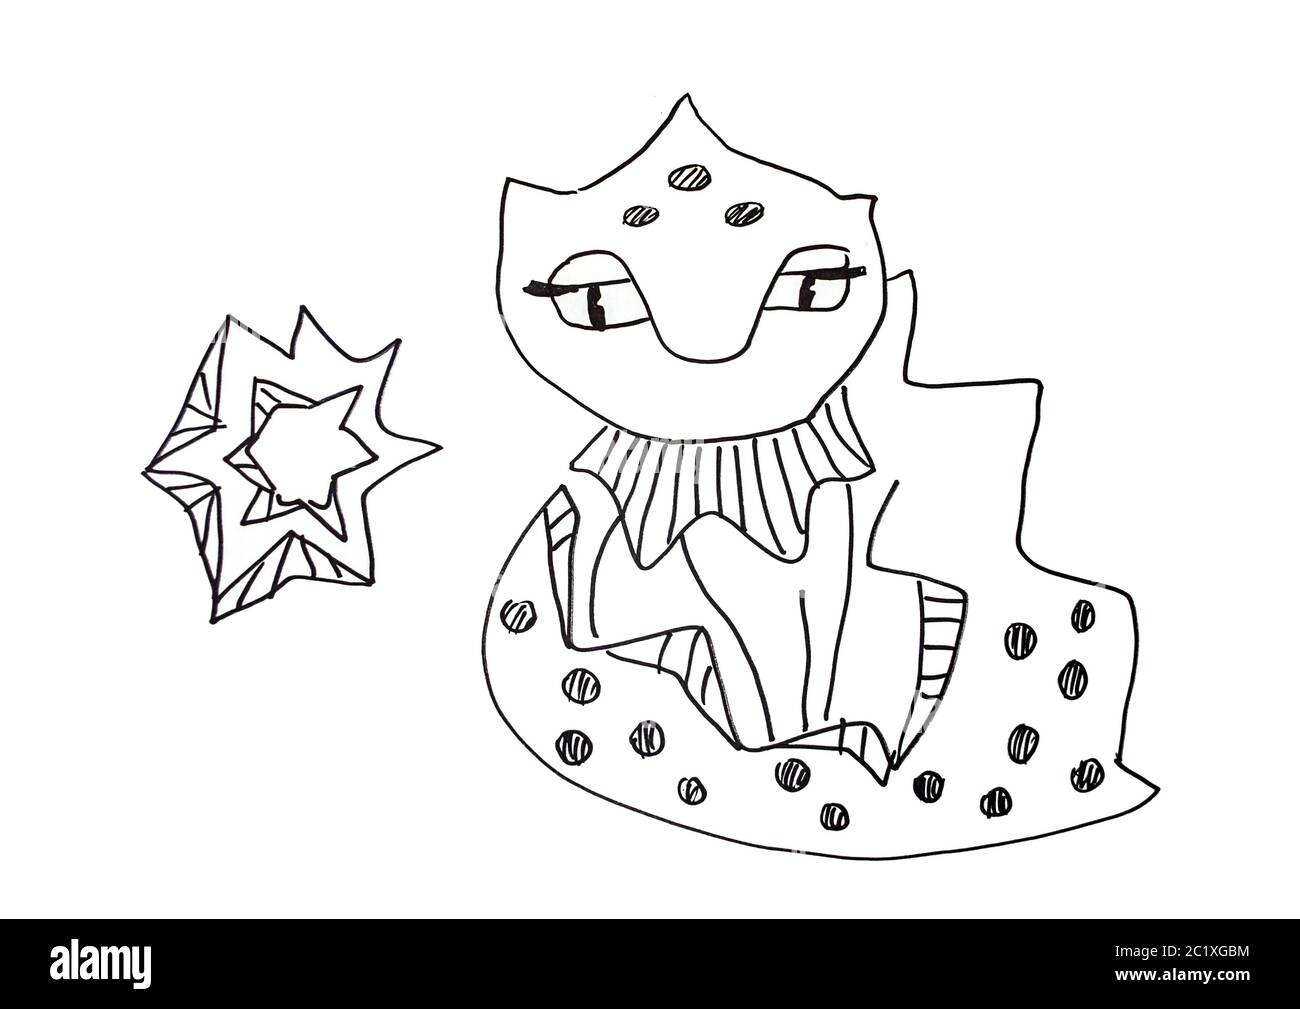 Lucertola Dragon con illustrazione del carattere a stella. Disegno grafico a linea nera su sfondo bianco. Foto Stock